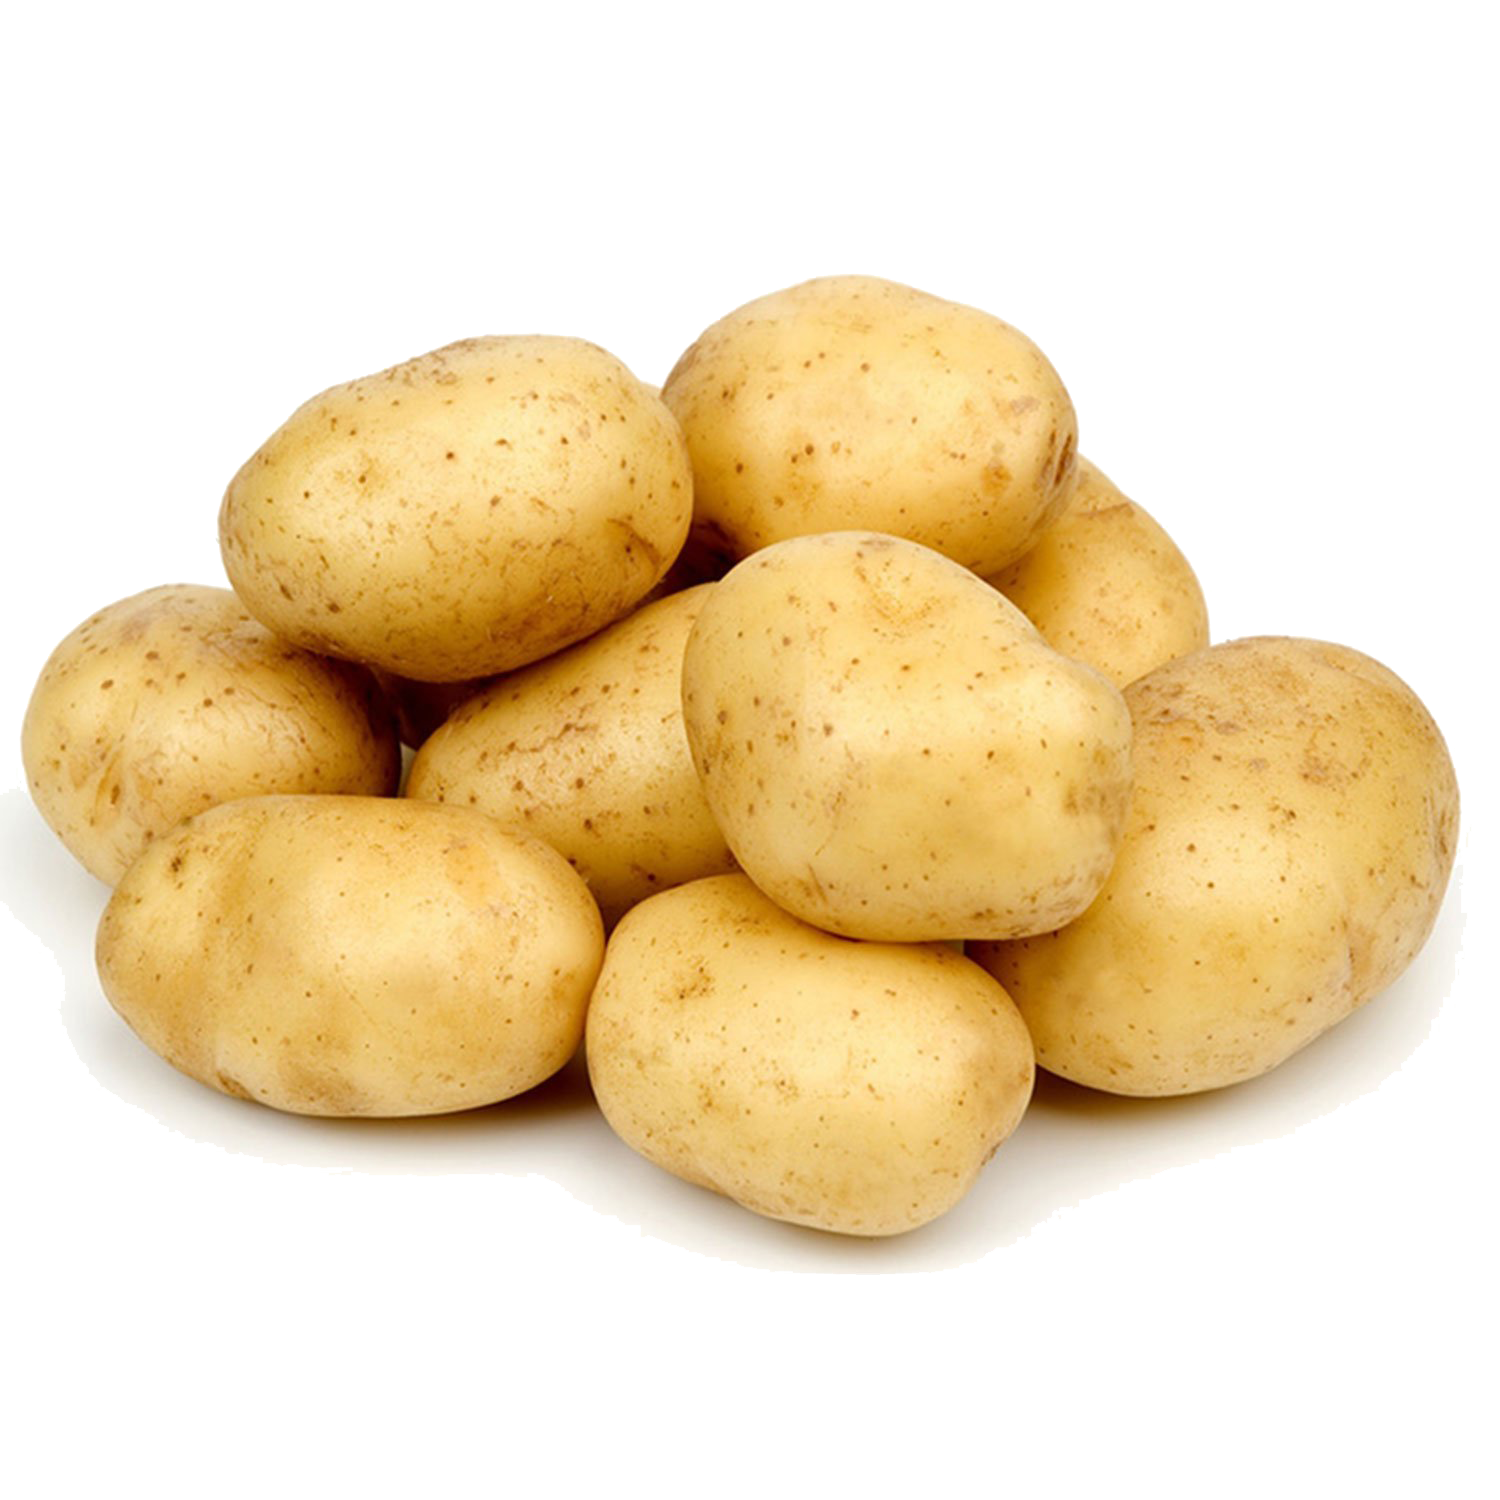 Potato – 1.25#